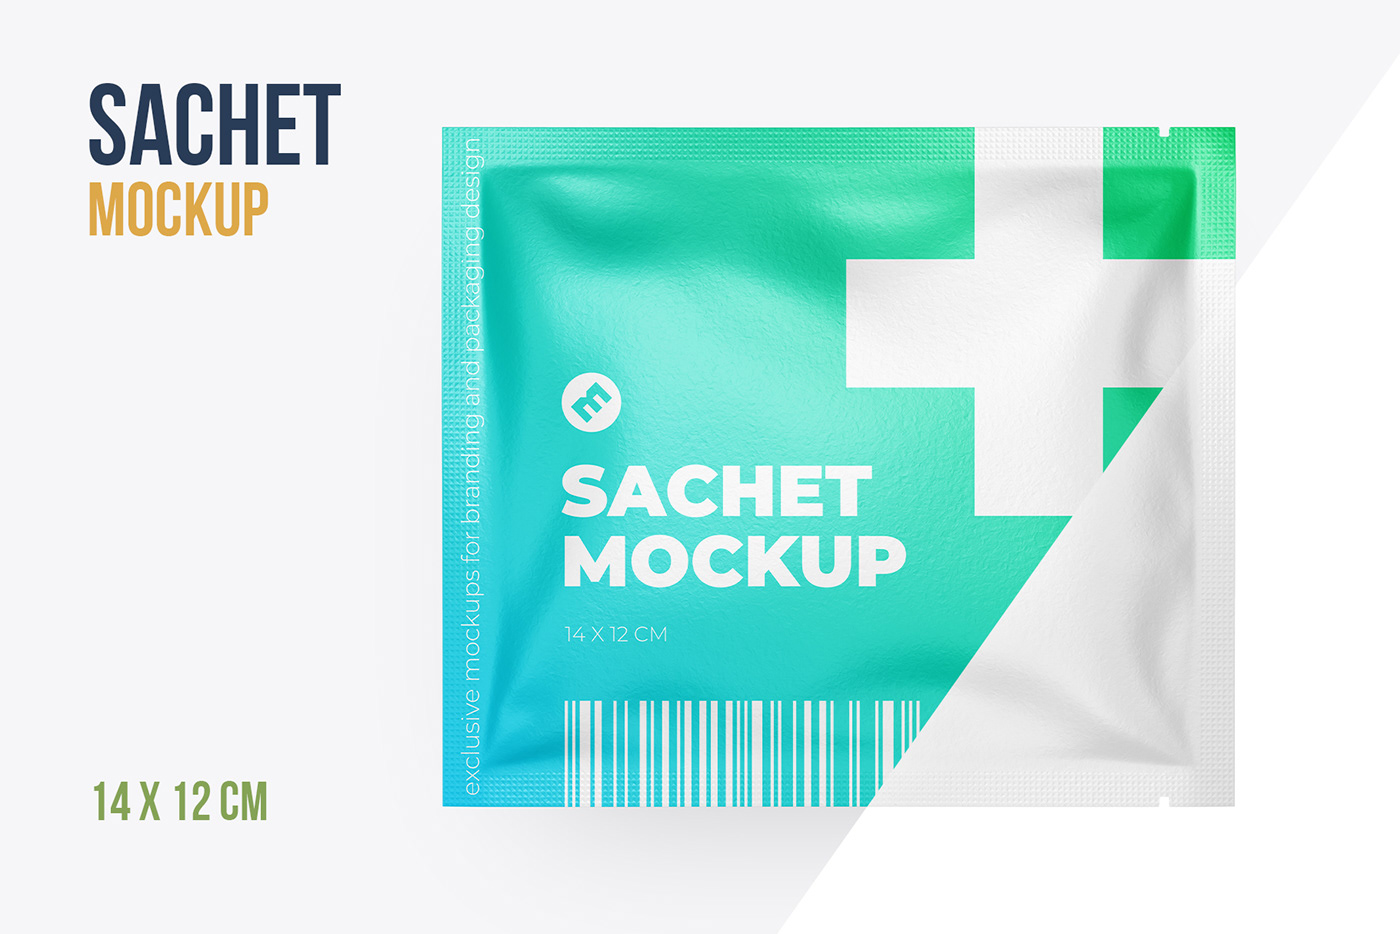 branding  design medicine Mockup package Packaging pharmacy sachet template wet